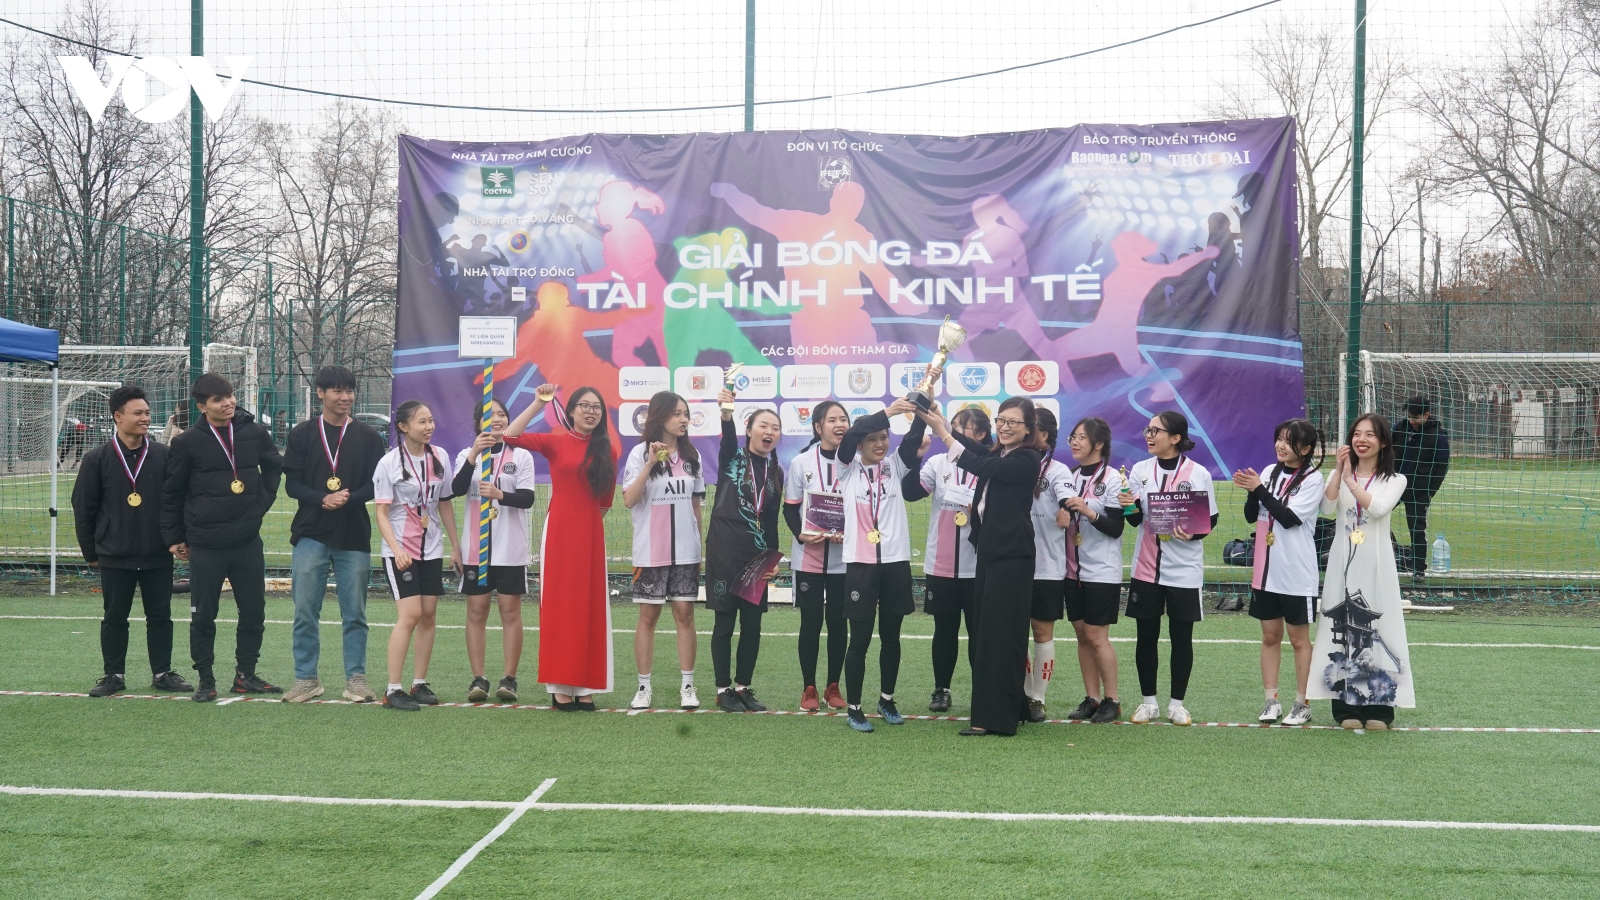 Giải bóng đá “Tài chính - kinh tế 2023” của sinh viên Việt Nam tại Nga